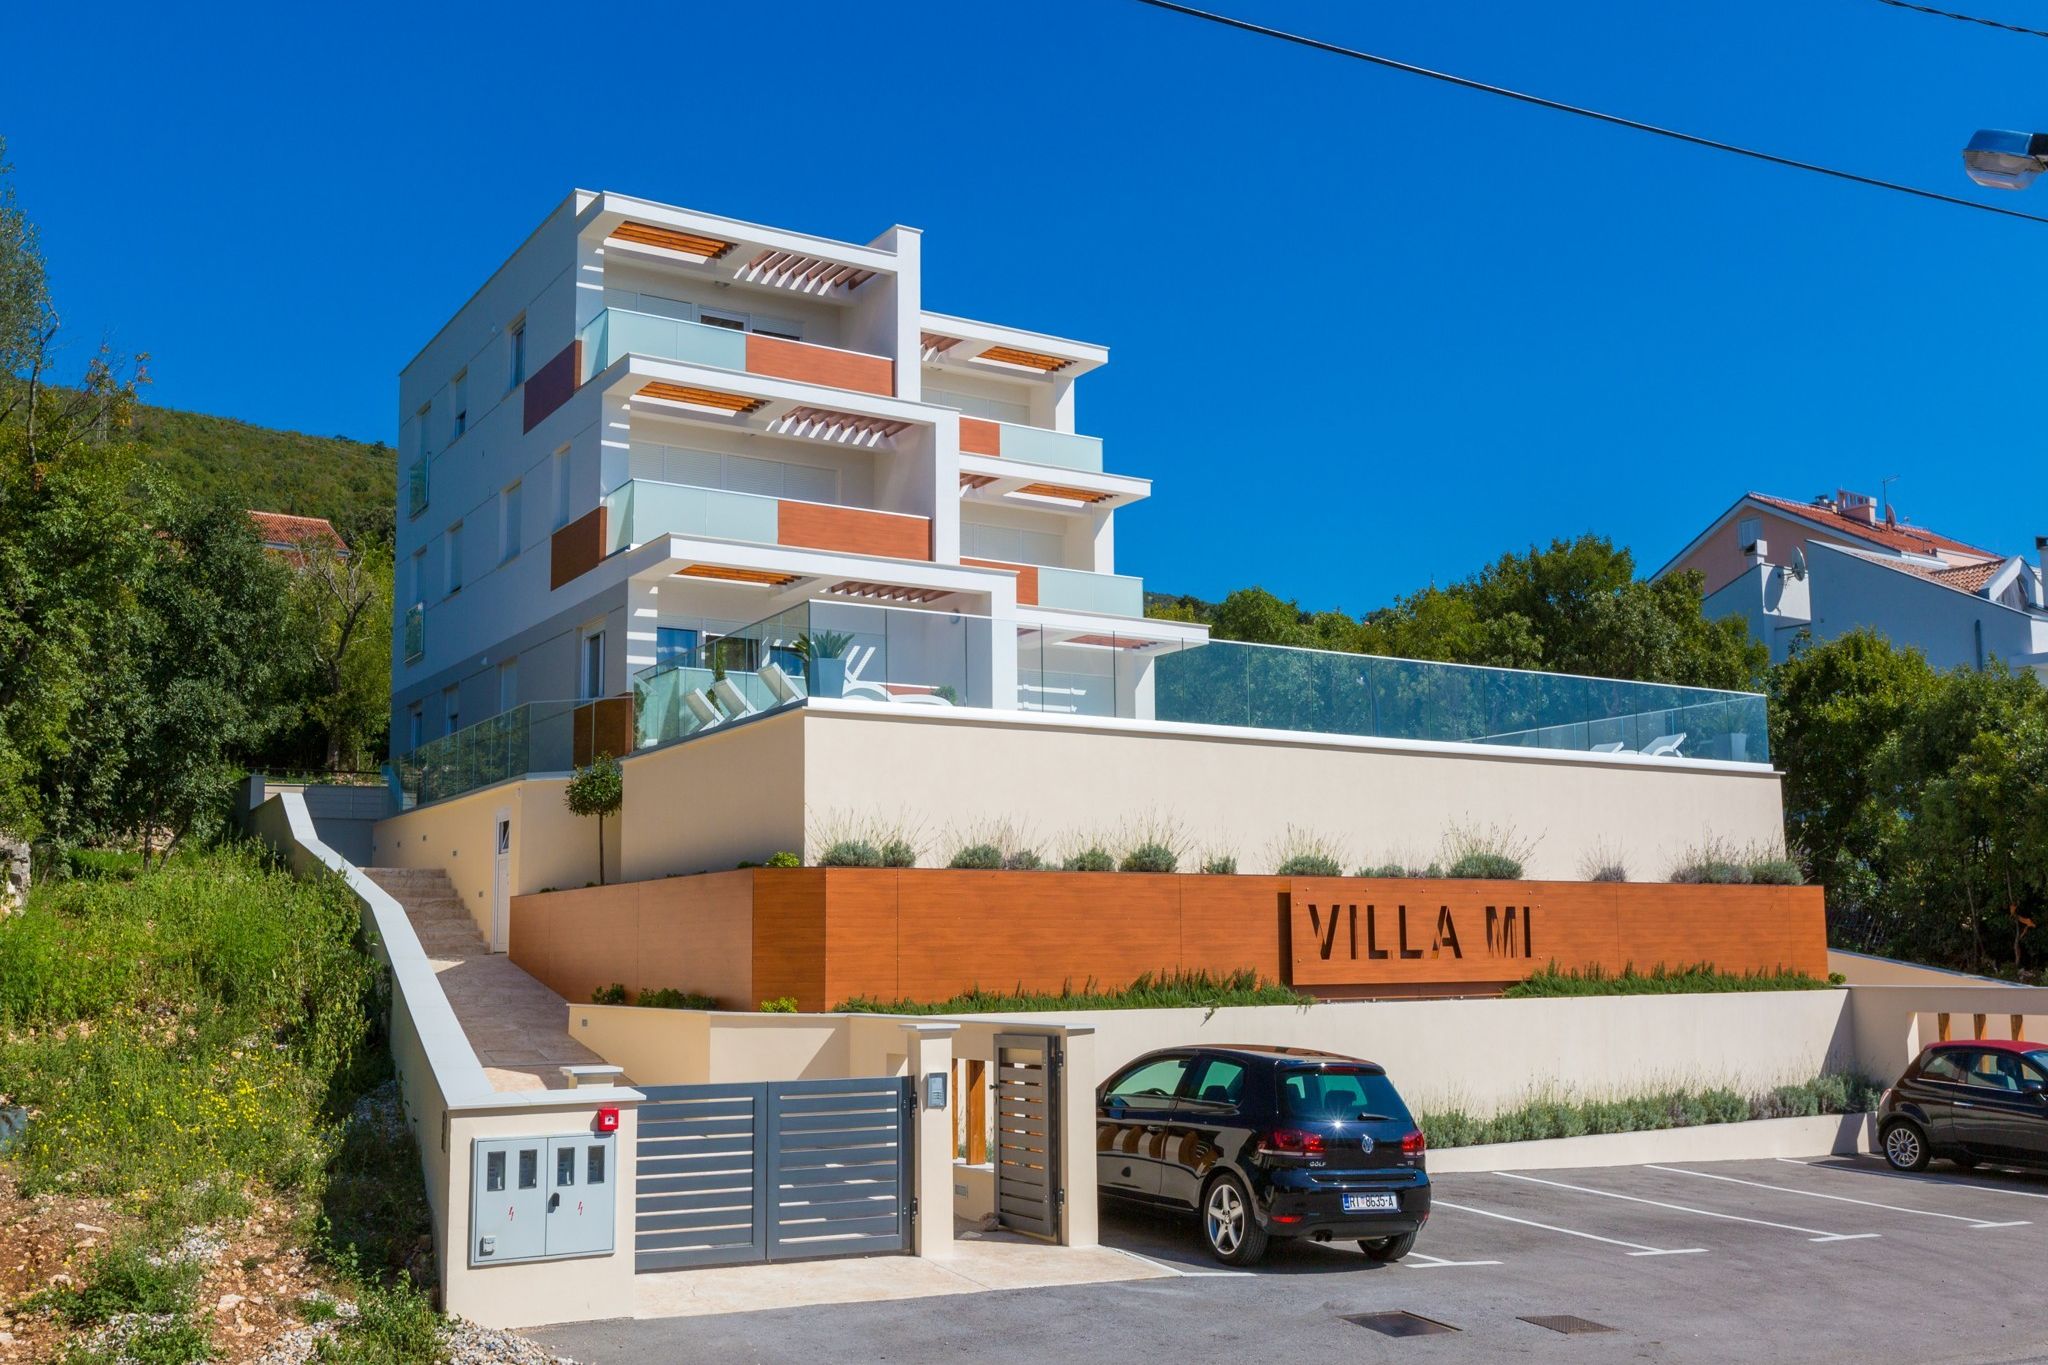 Geweldig villa appartement met zwembad, op 350 m afstand van het strand!